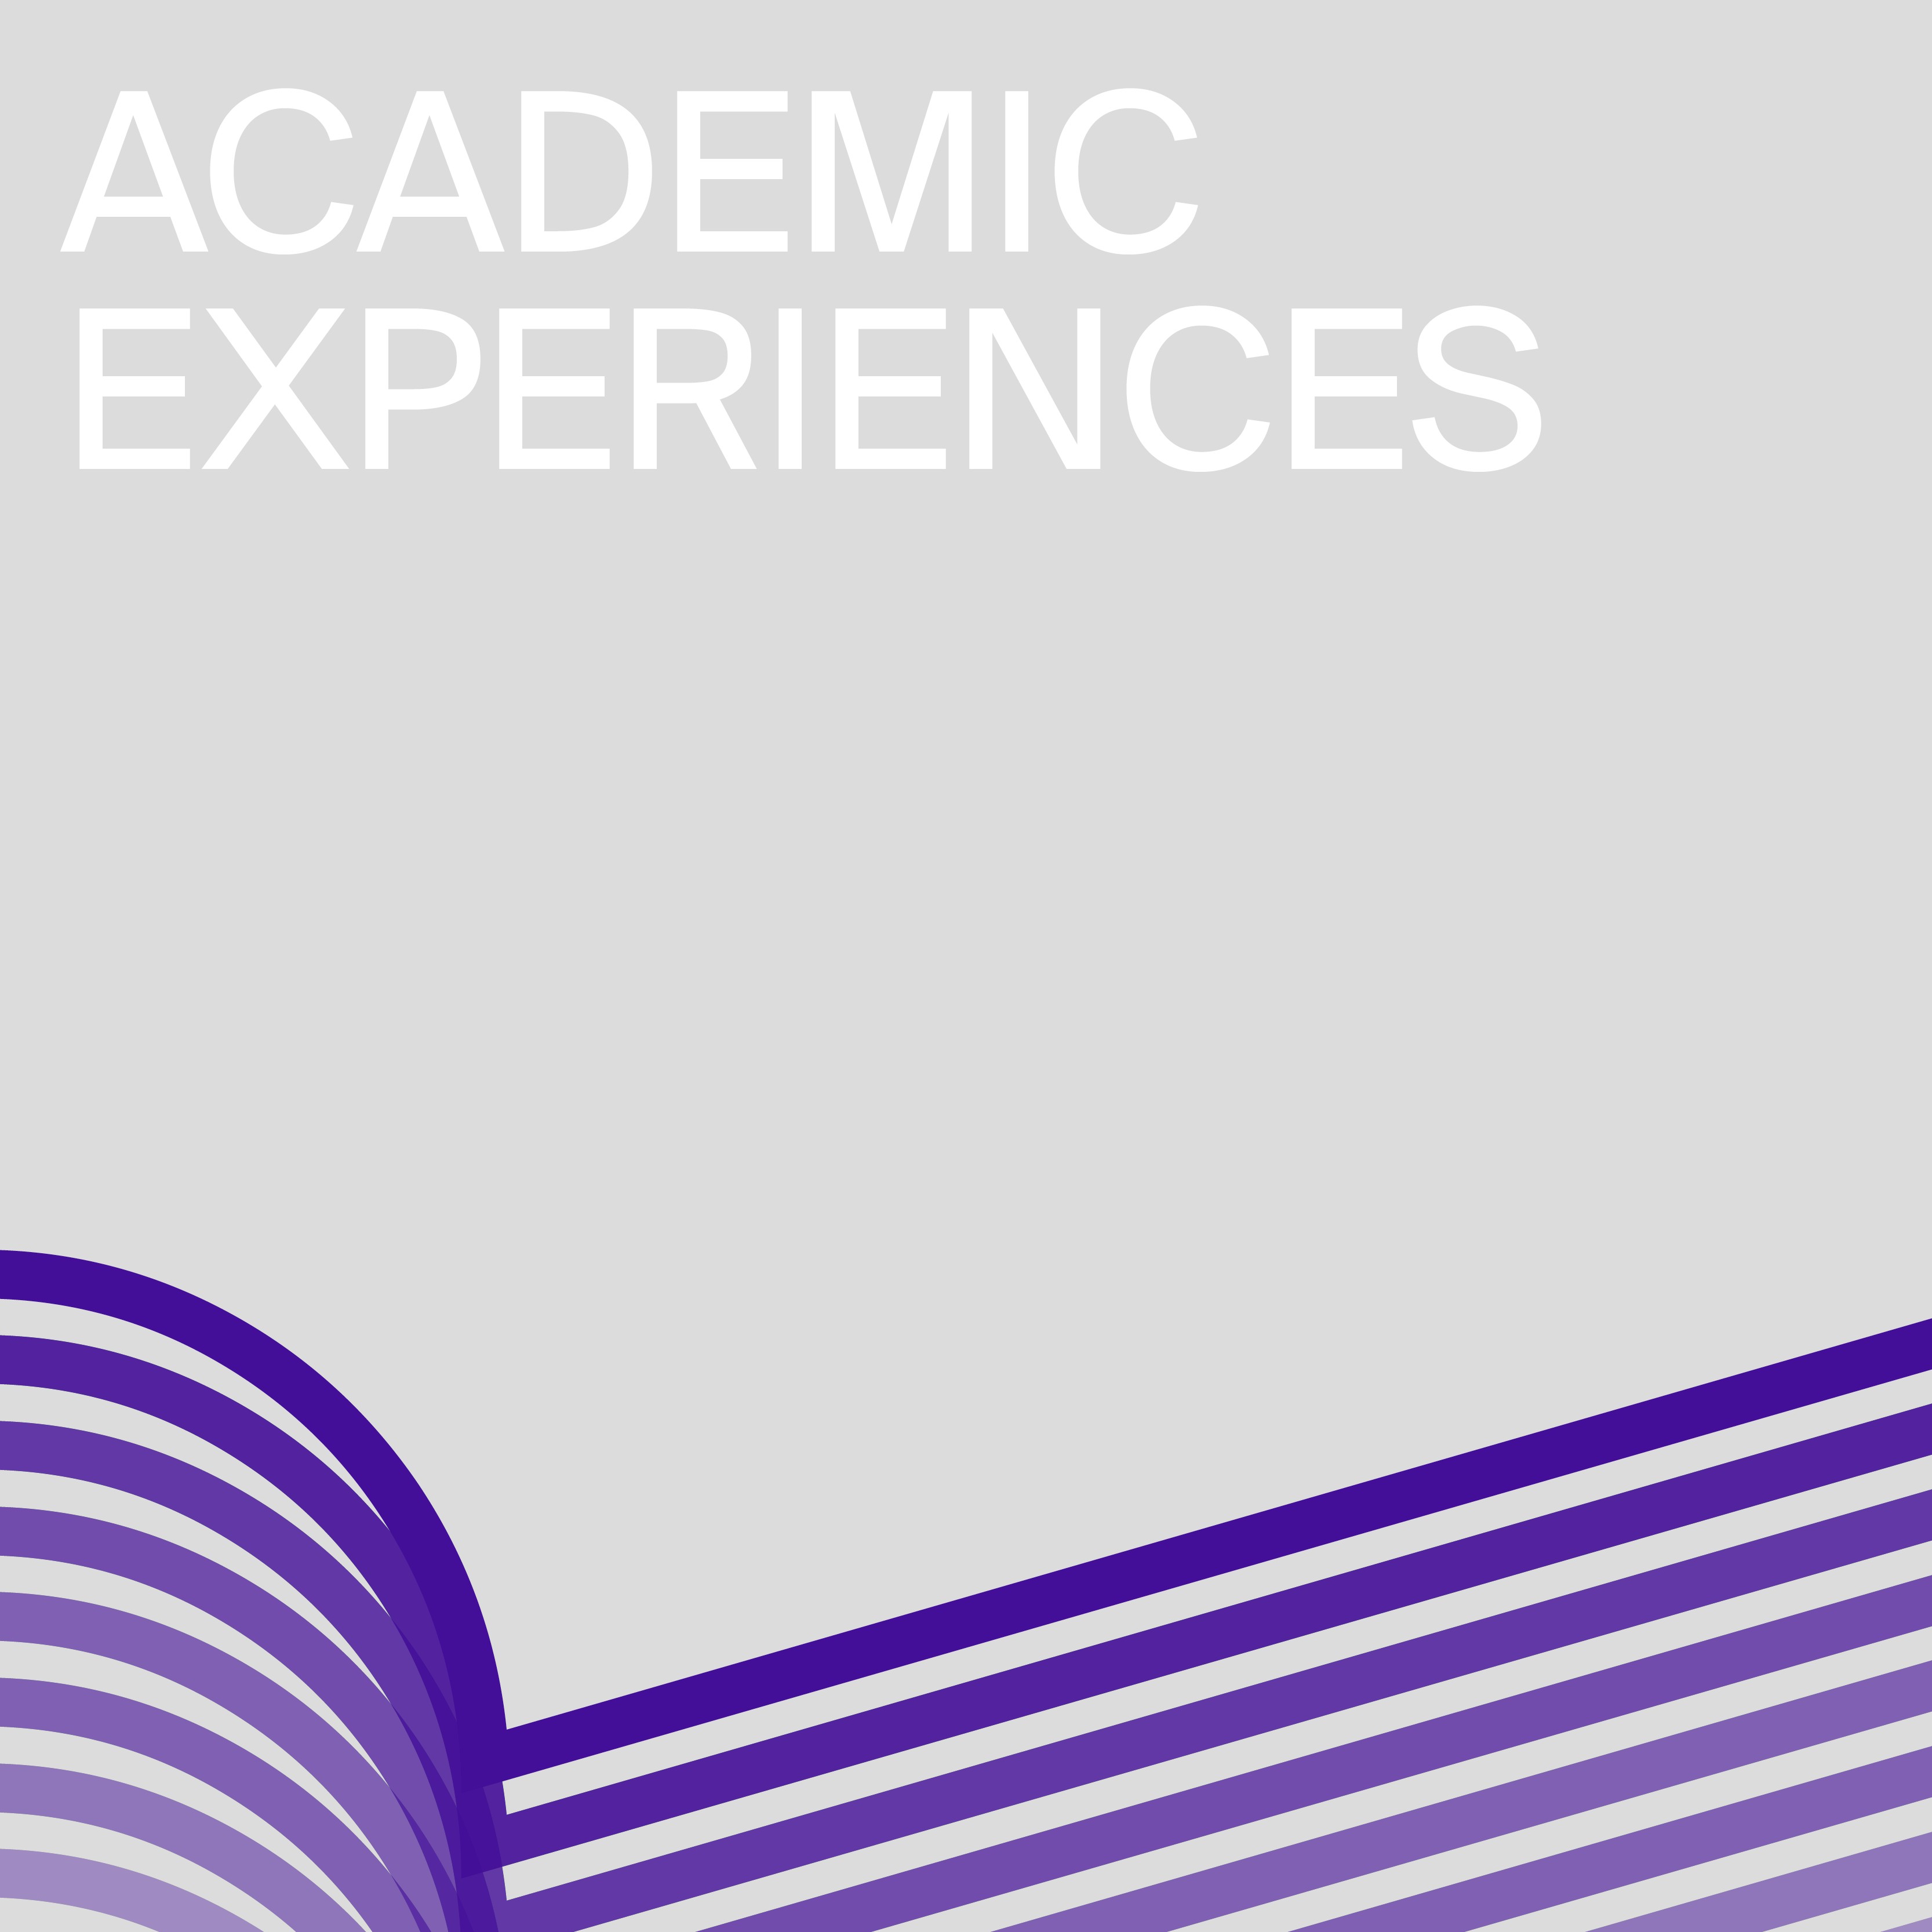 Academic experiences